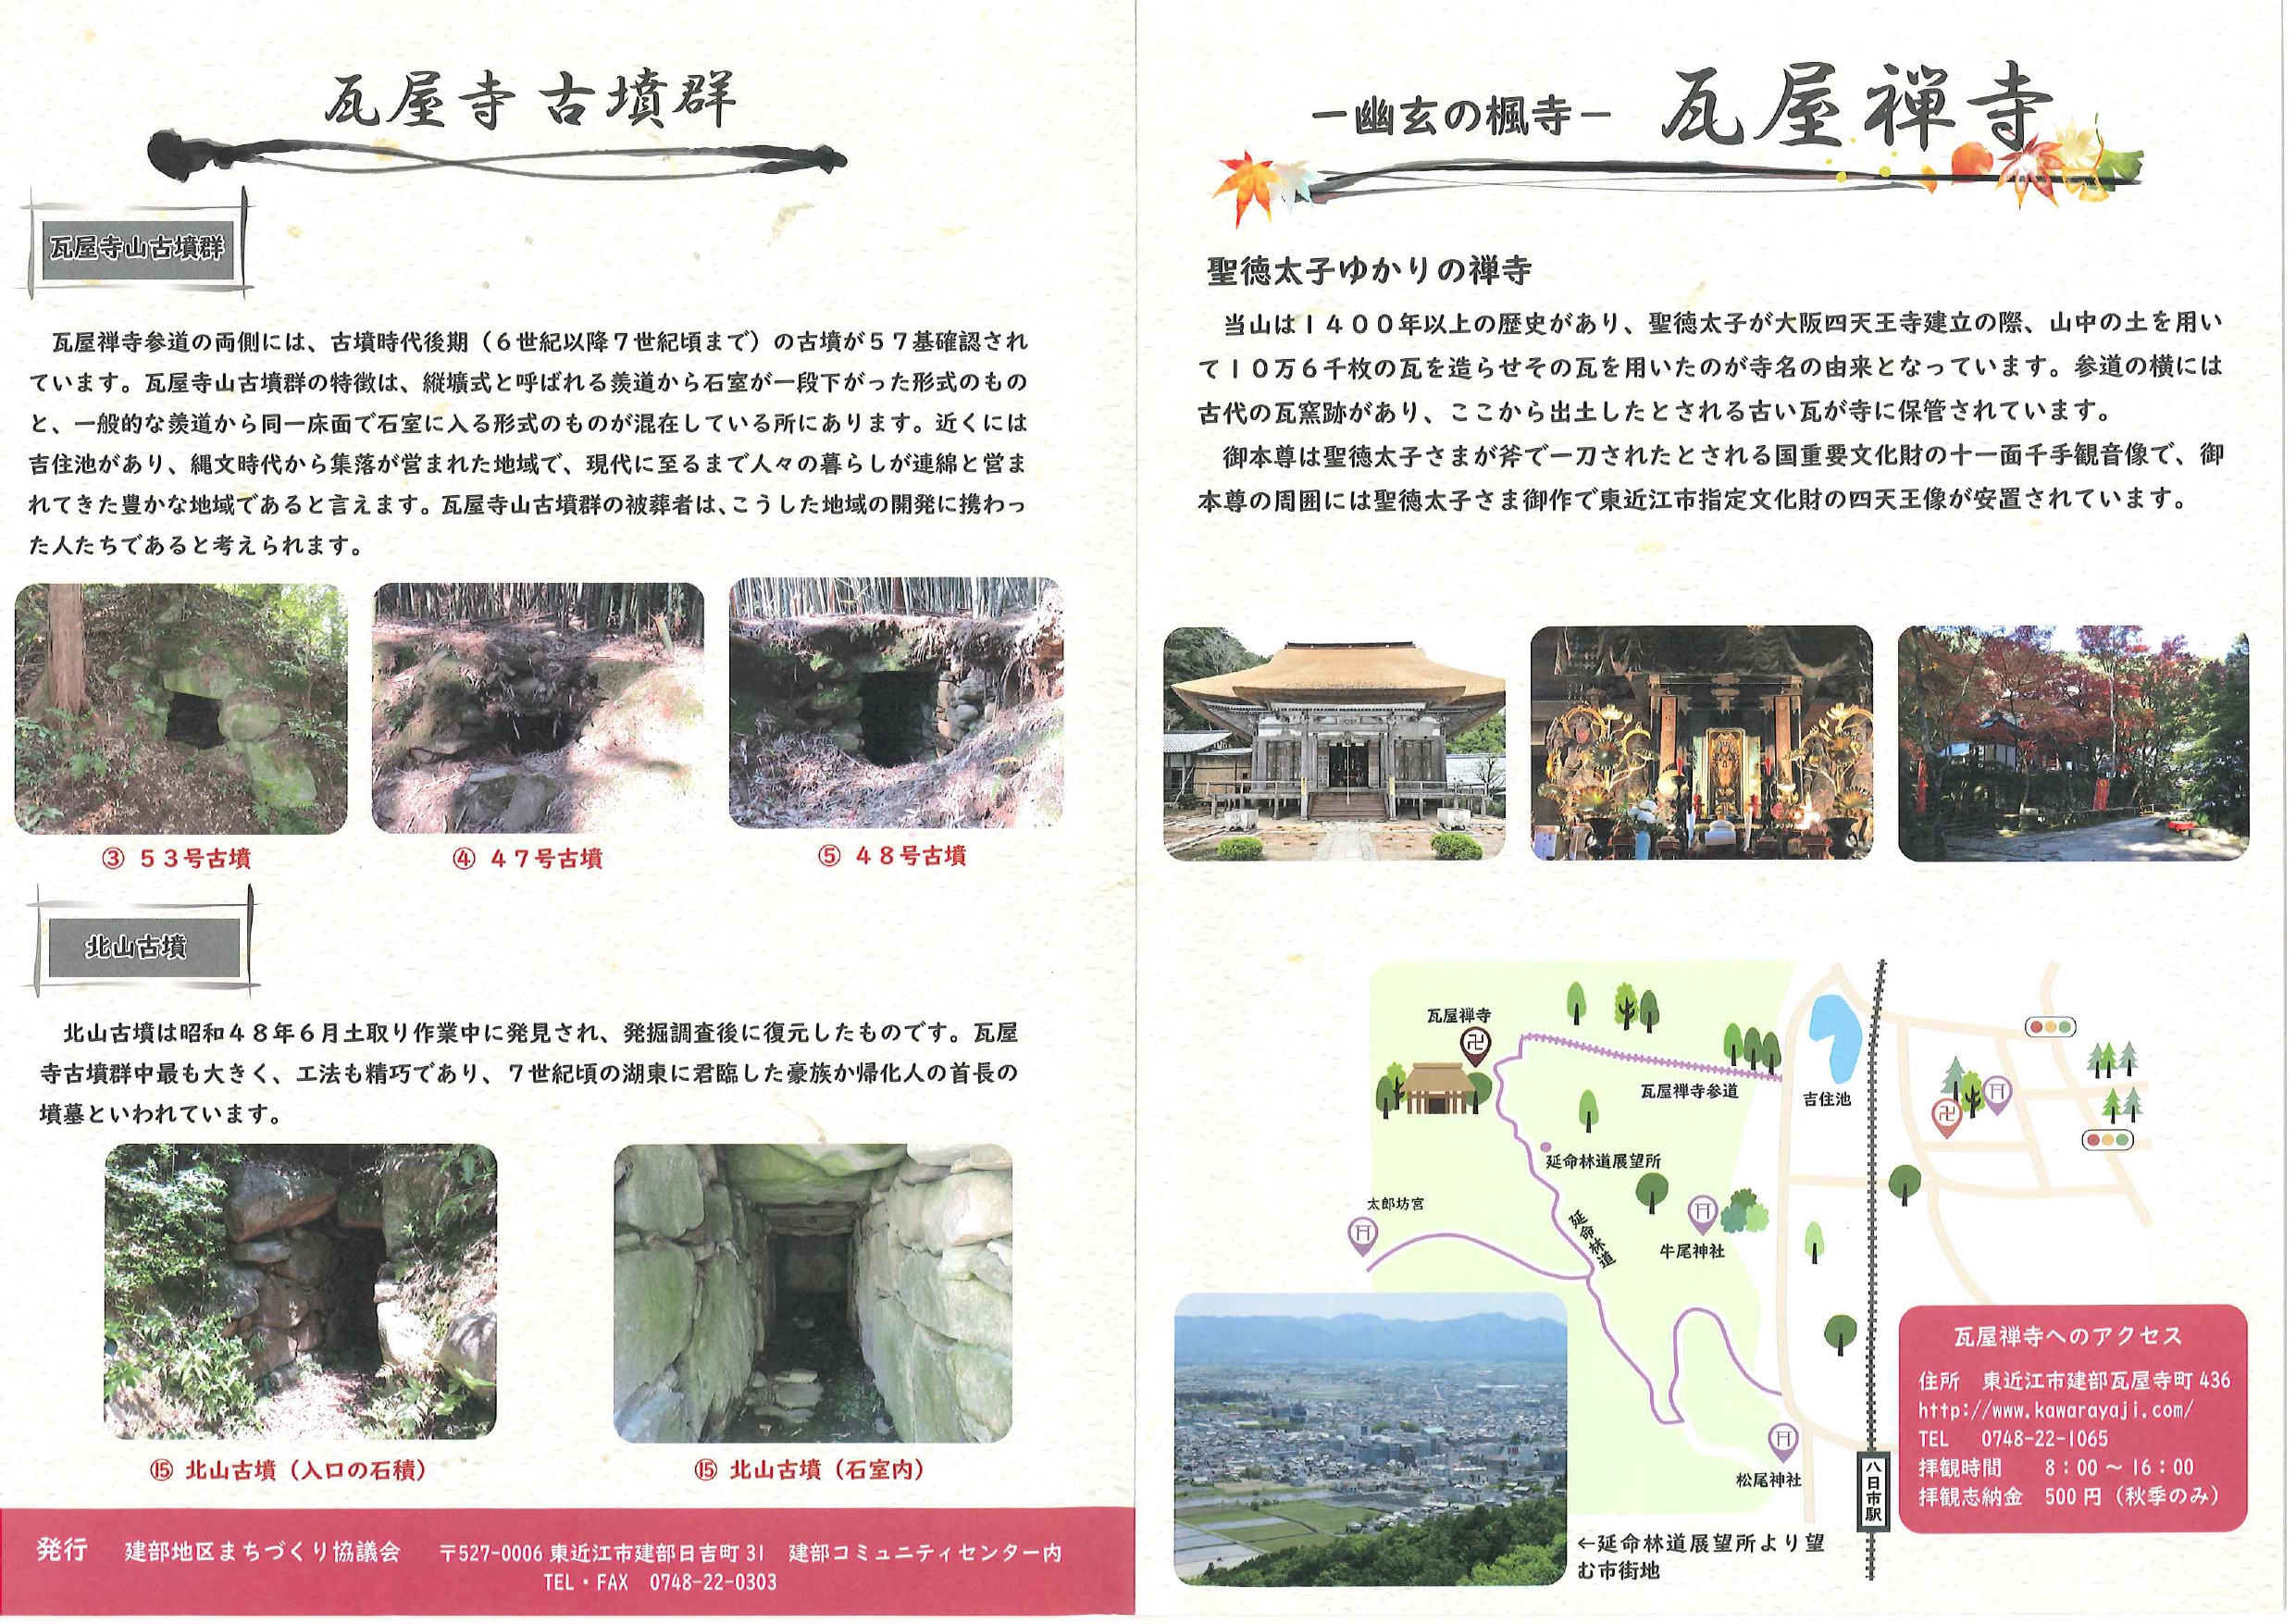 お試し居住プロジェクト「政所山荘」に泊まって　東近江市で移住体験しよう！